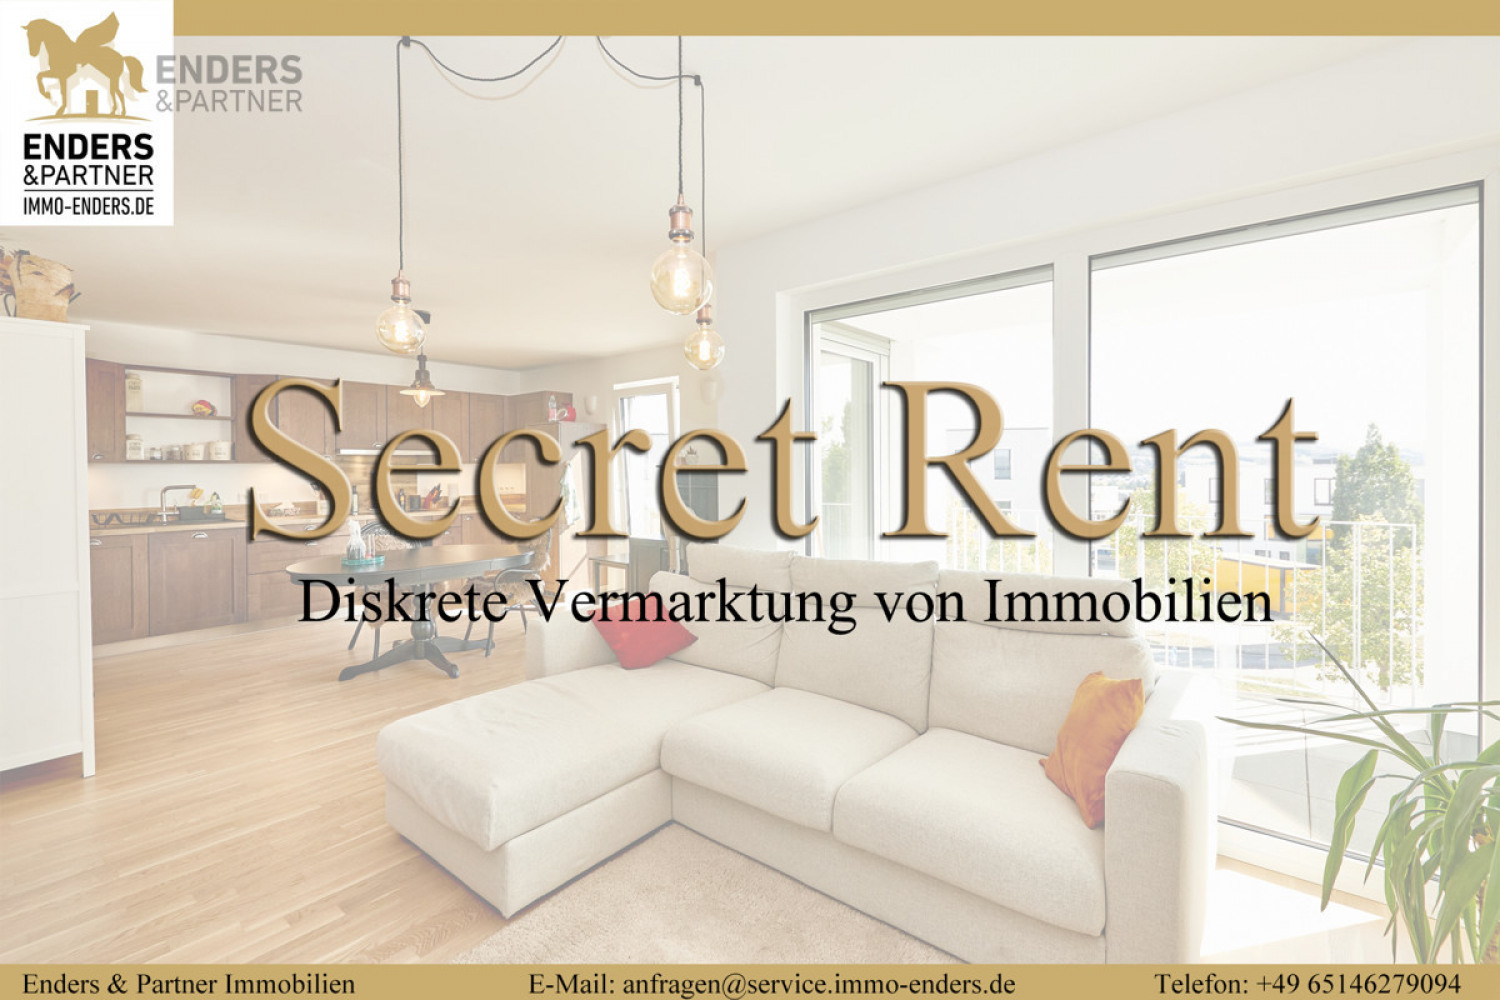 Secret Rent